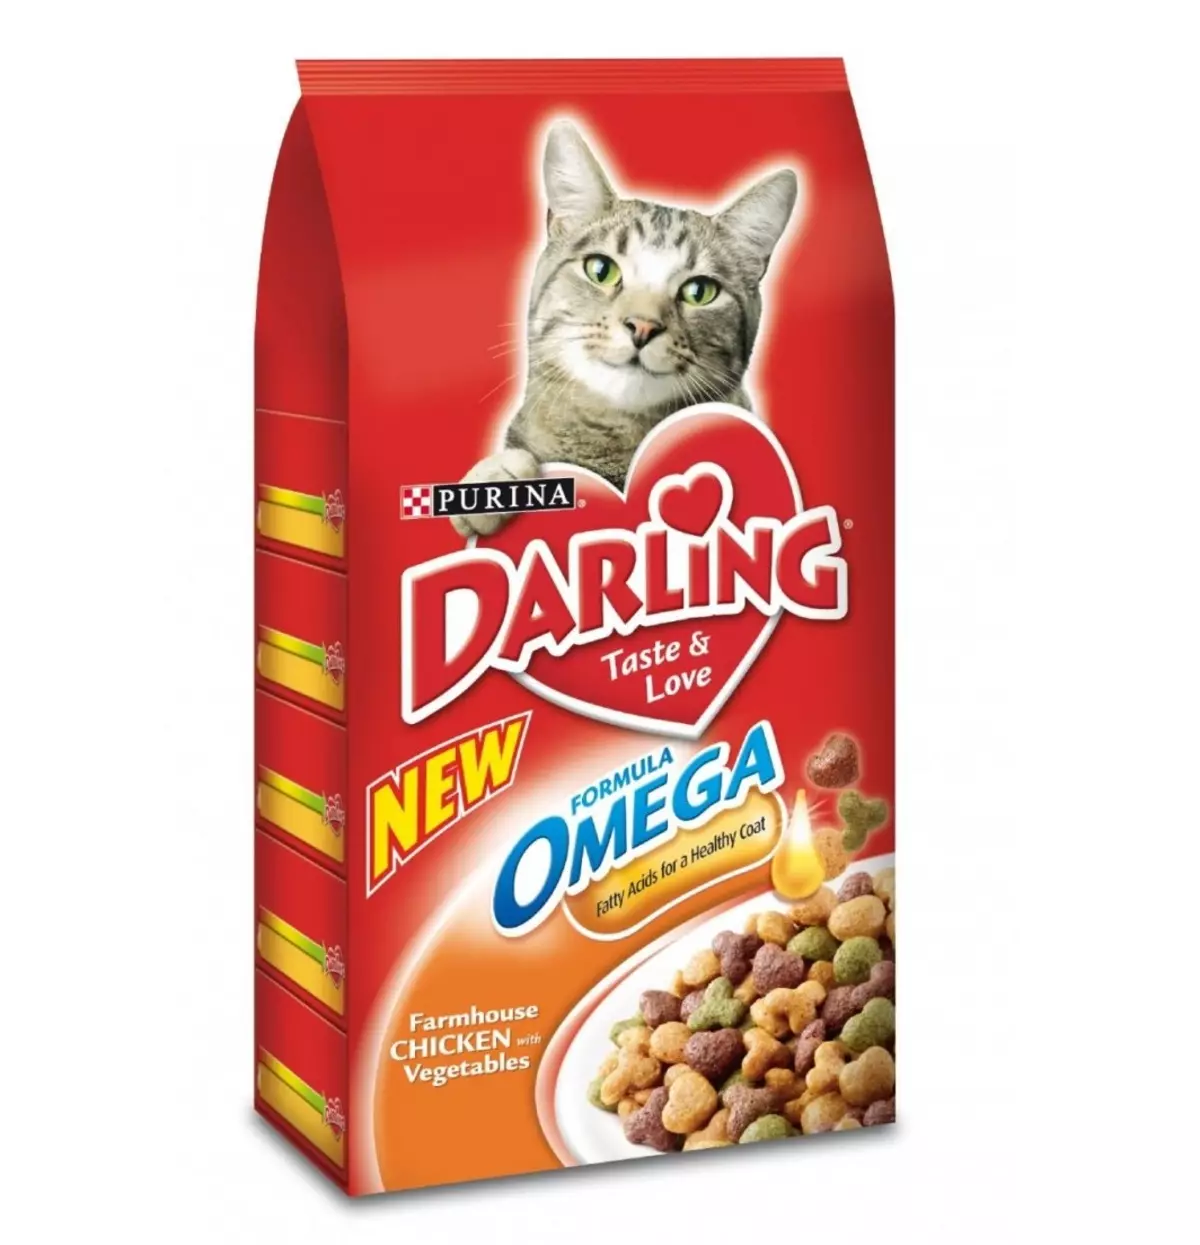 Котешка храна Darling: Feline суха храна от Purina в опаковки 2 кг и 10 кг, различни видове, състав и рецензии 22732_2